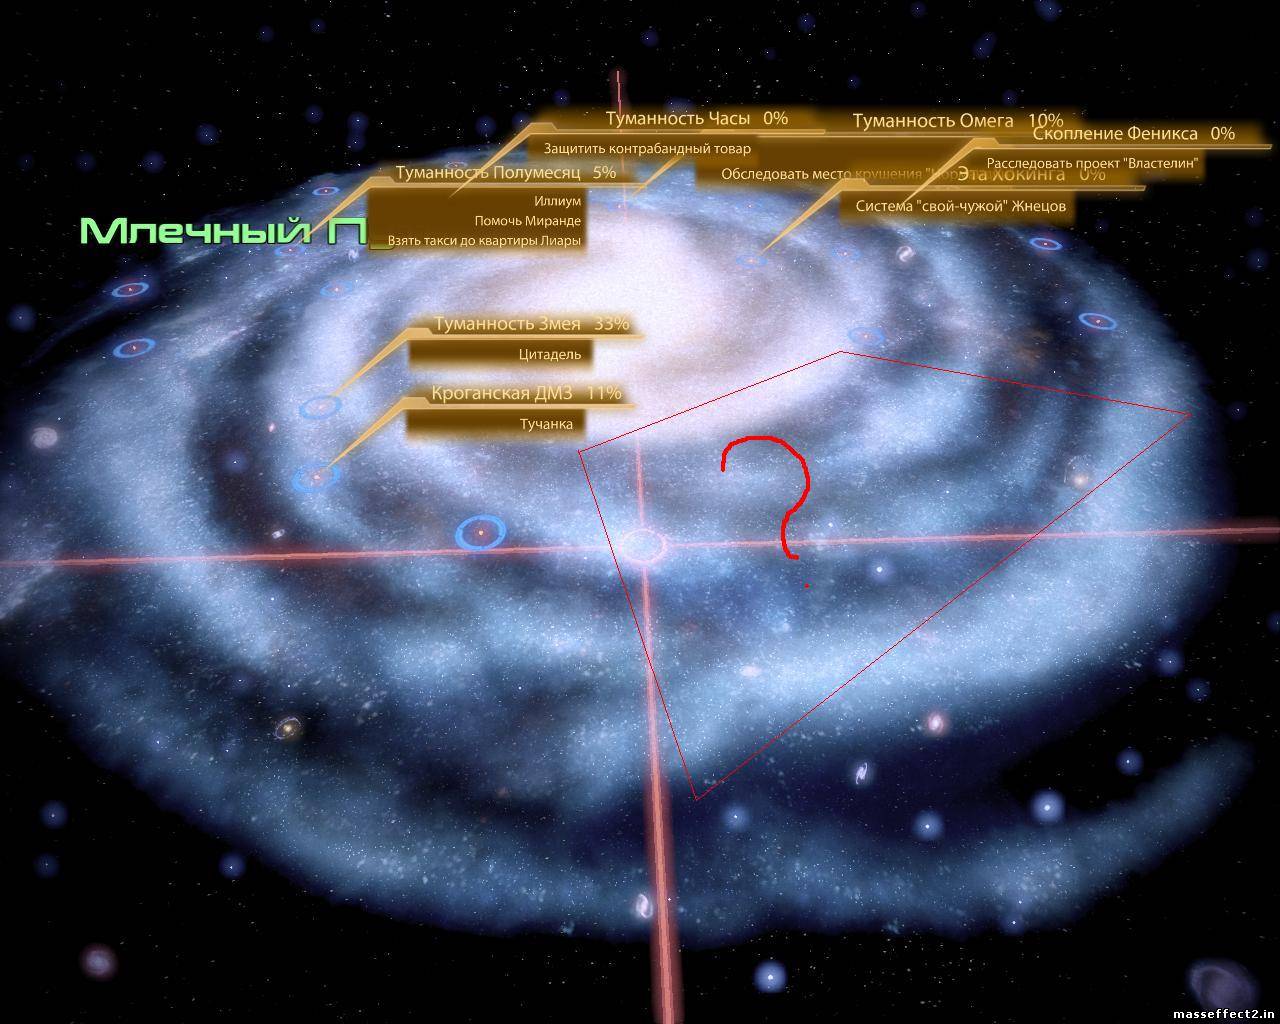 Скриншоты трилогии Mass Effect.